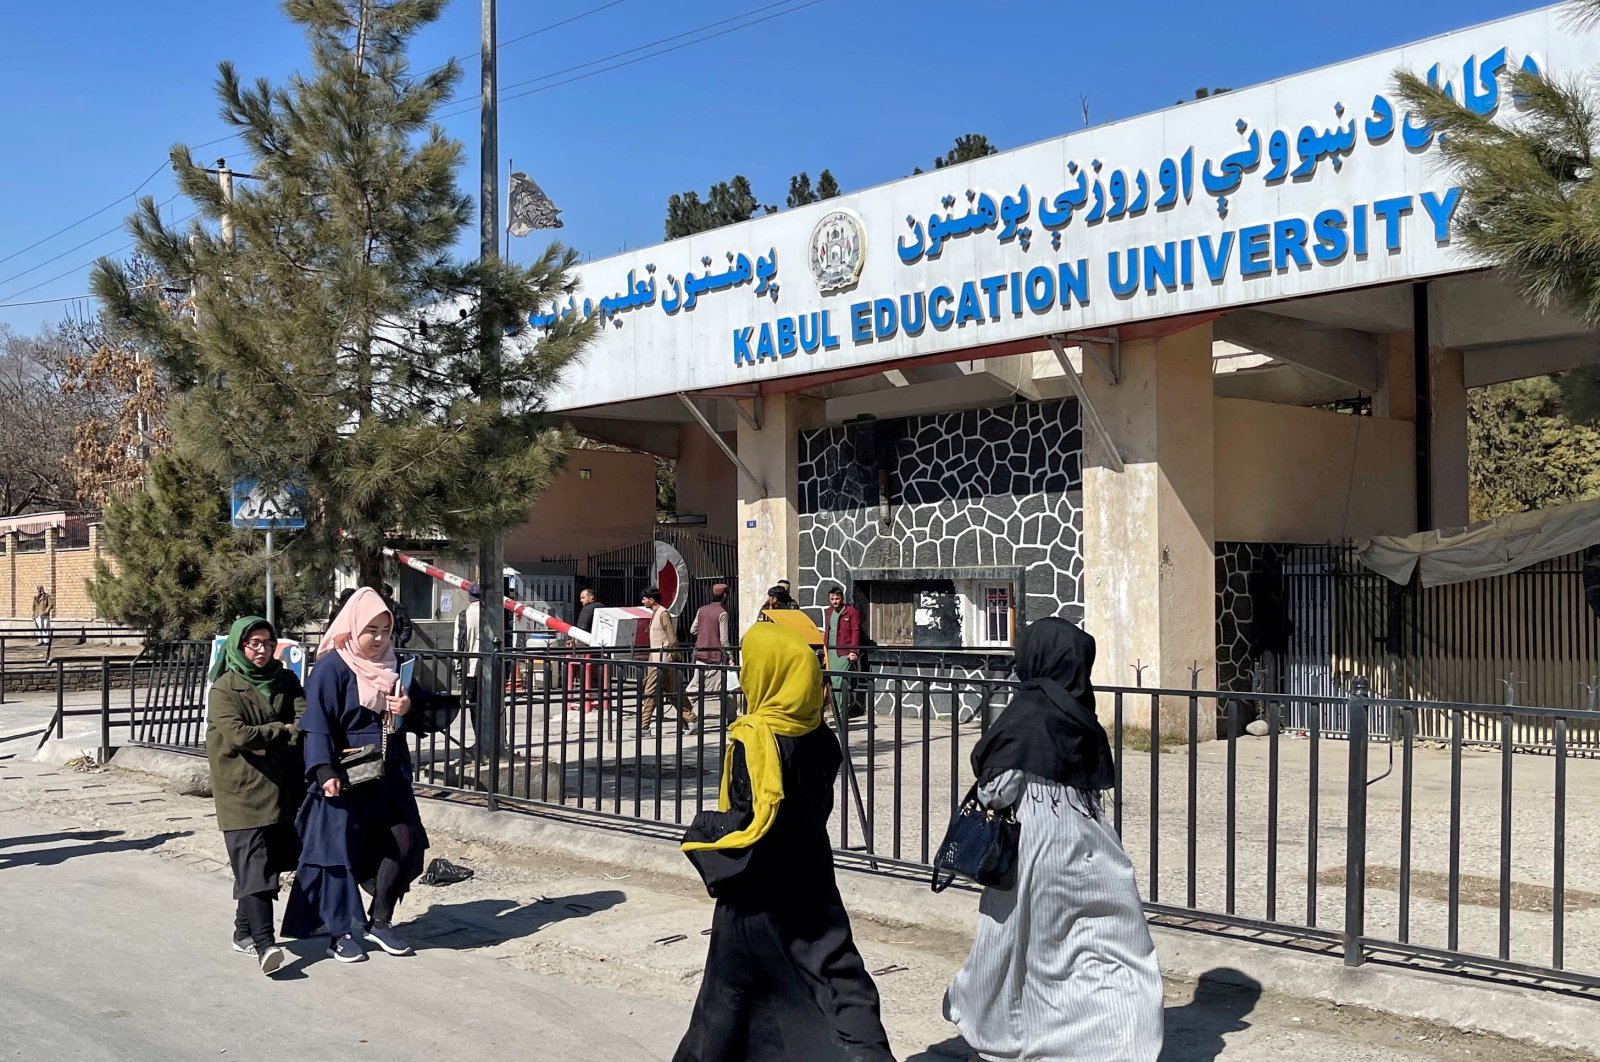 Taliban melarang pendidikan universitas untuk anak perempuan di Afghanistan